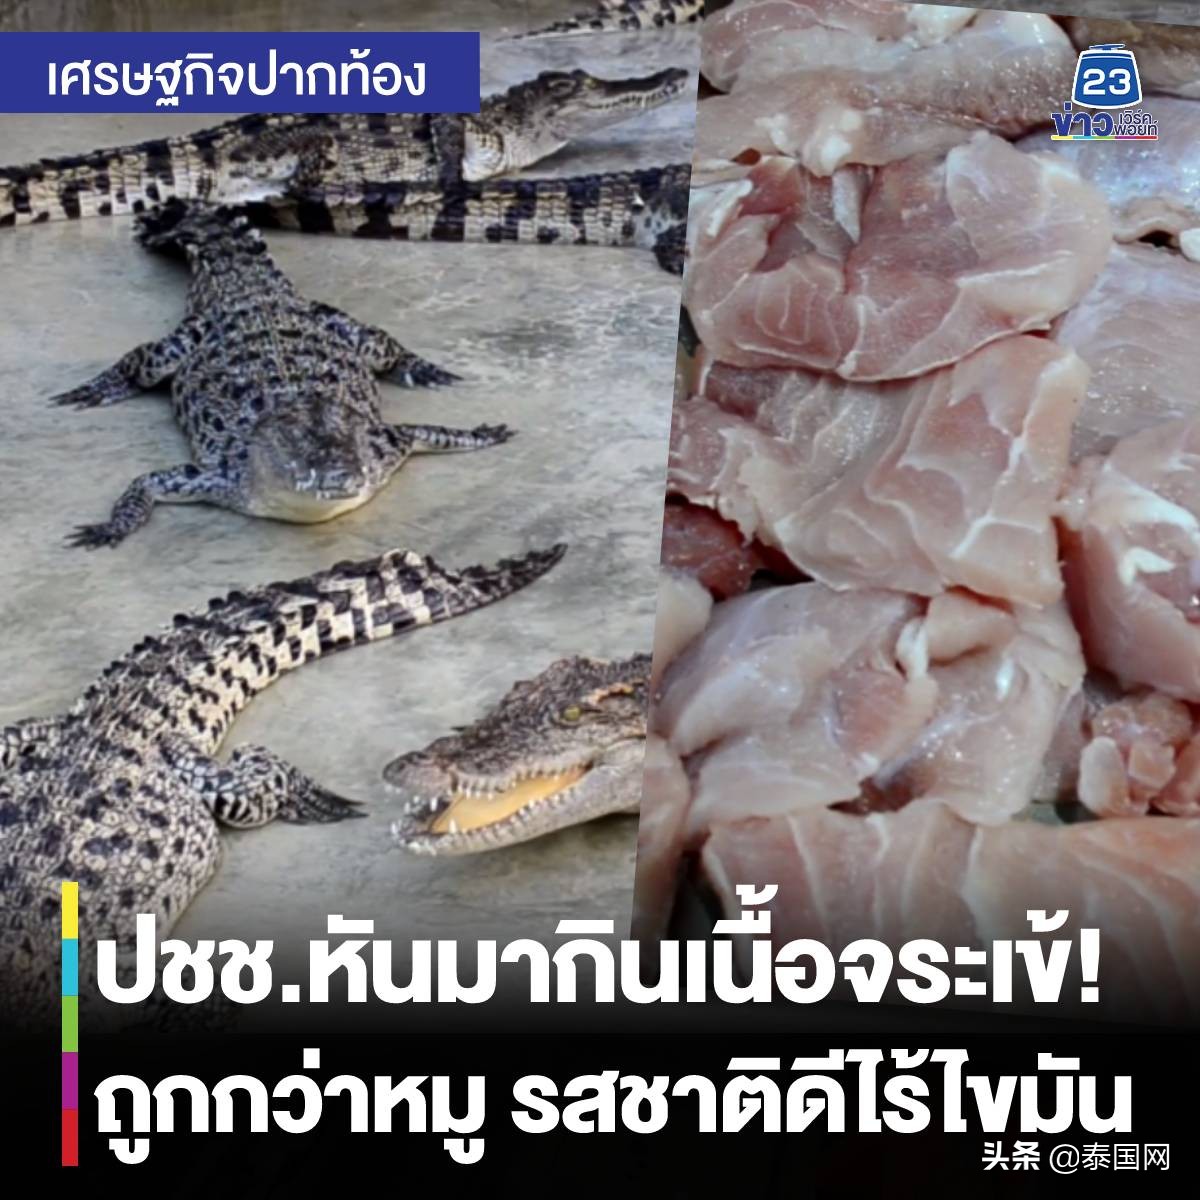 泰国猪肉涨价 民众开始转移消费目光至鳄鱼肉上